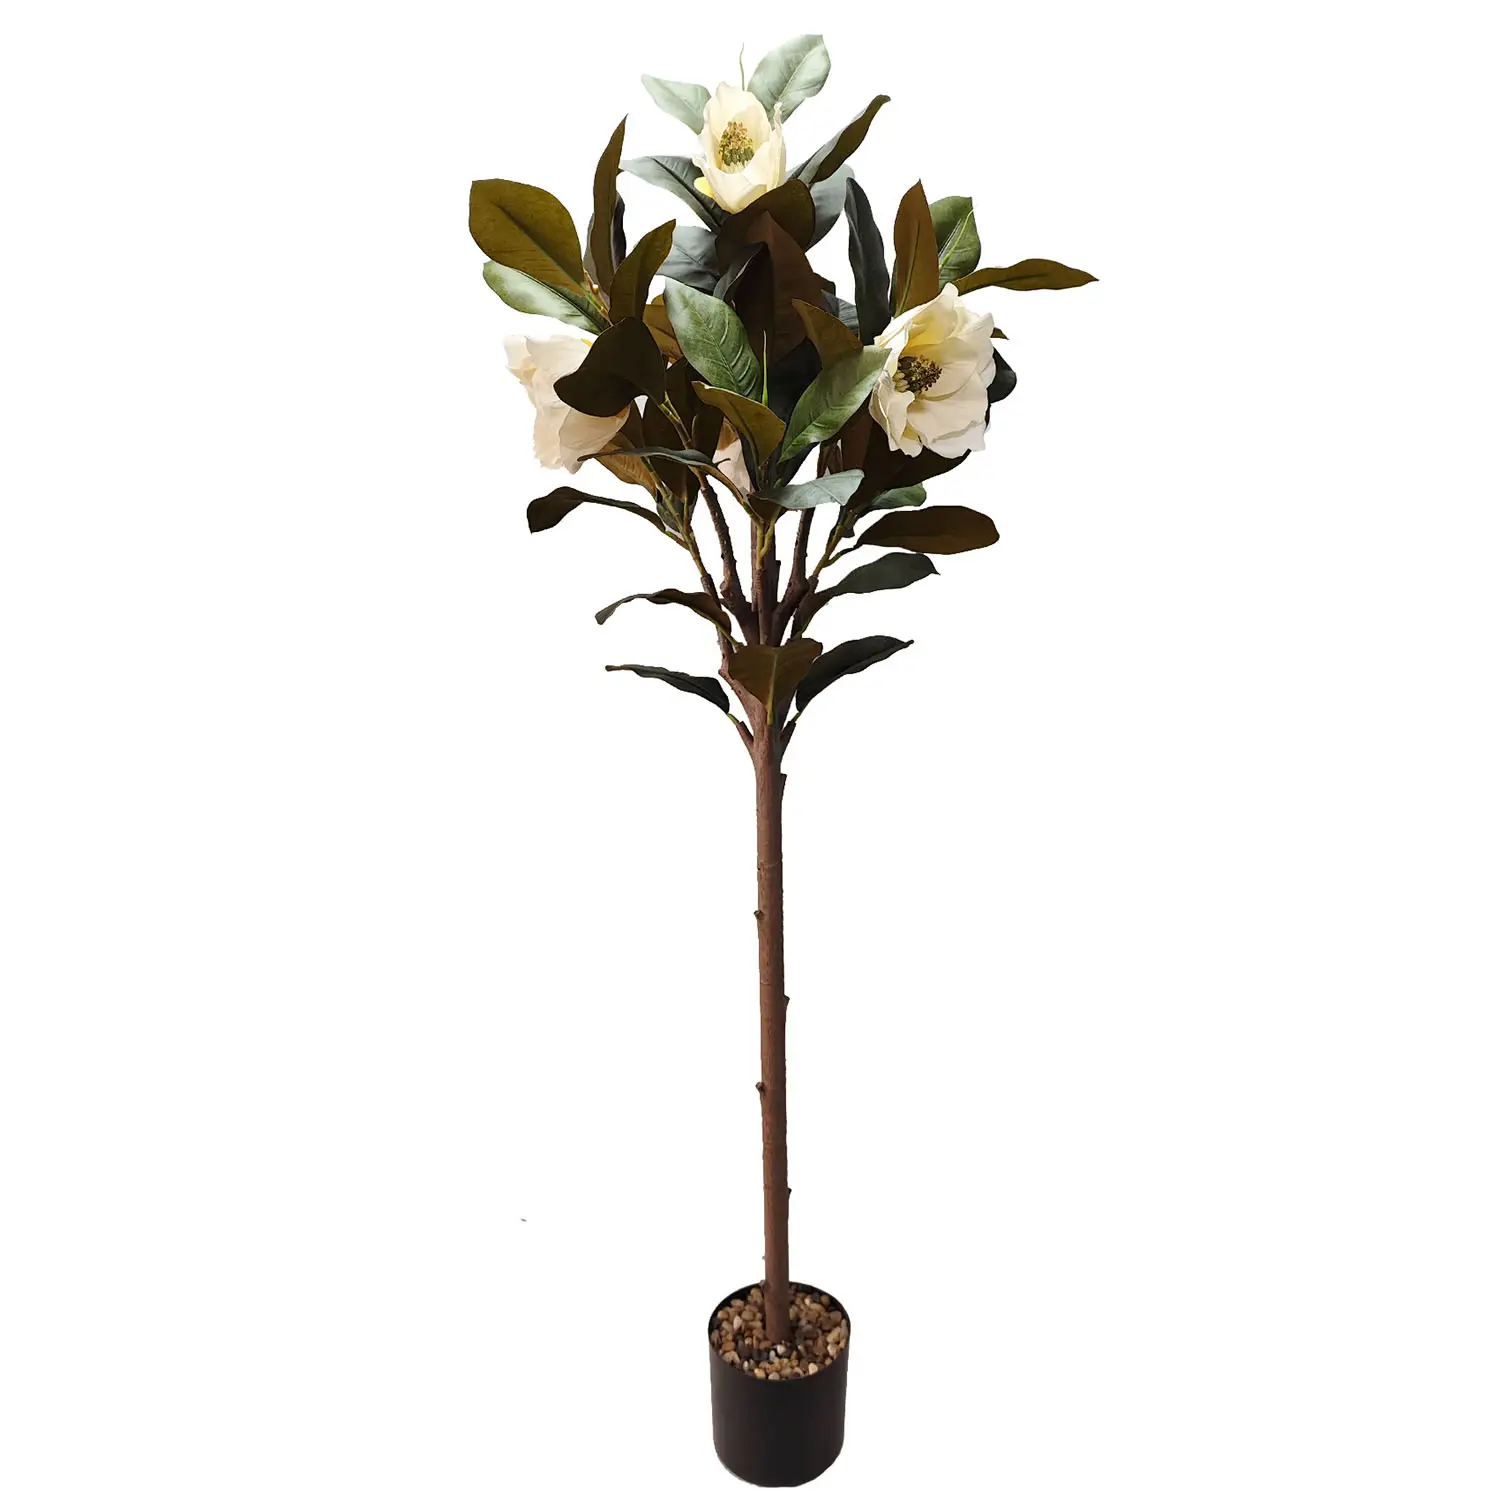 140 cm-penjualan langsung pabrikan pohon anggrek Magnolia tanaman buatan untuk dekorasi meja rumah pohon dekorasi tanaman buatan